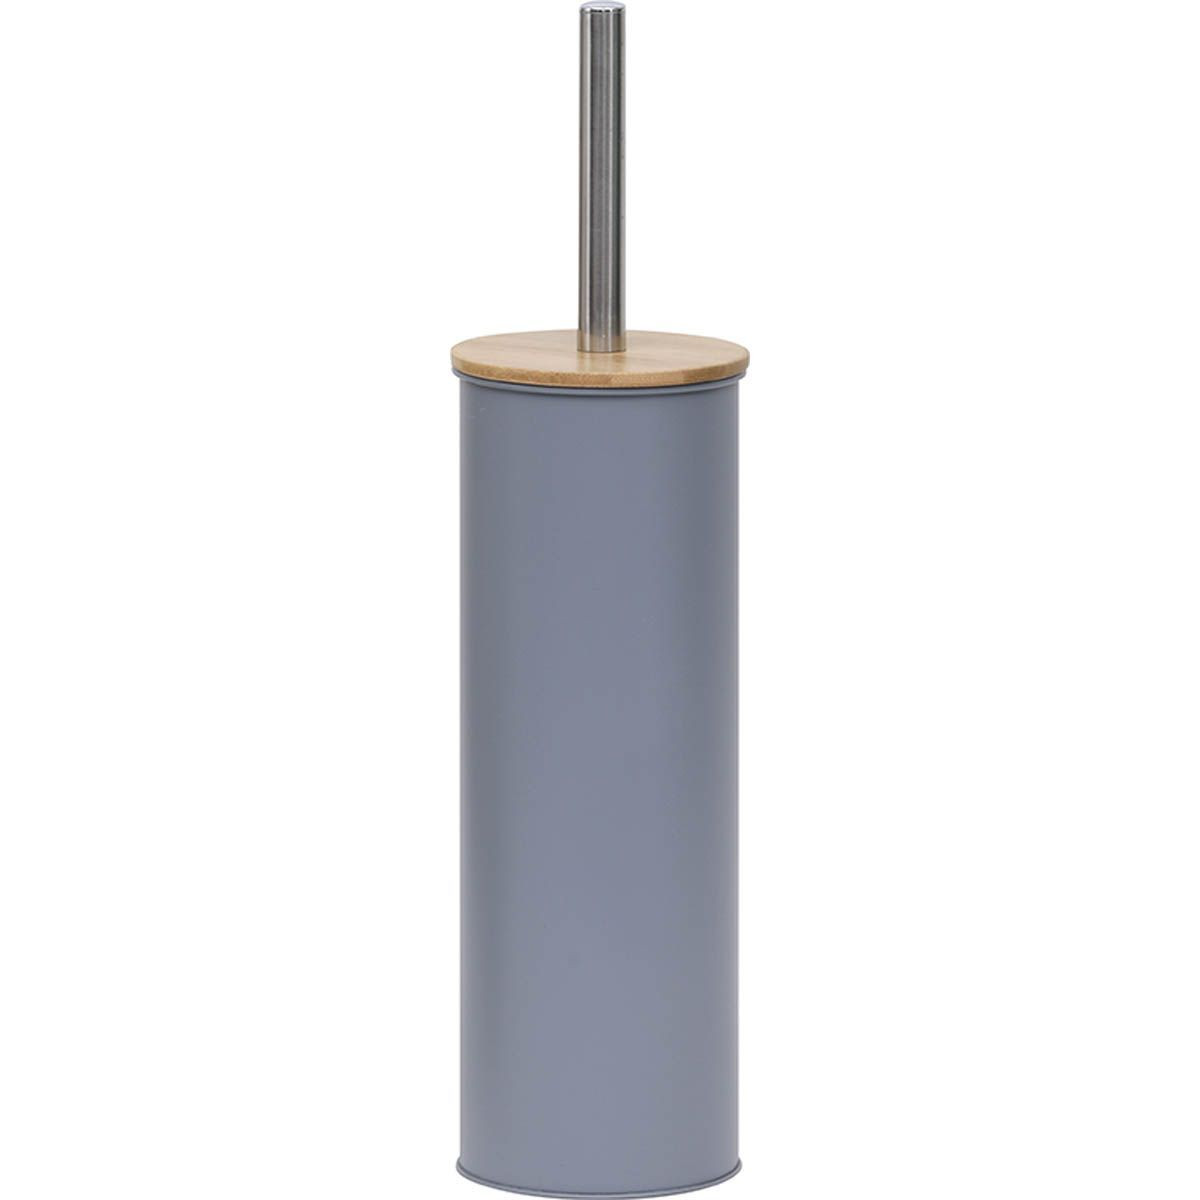 https://www.decomania.fr/724768-product_hd/brosse-wc-avec-support-en-metal-gris-et-couvercle-bambou.jpg